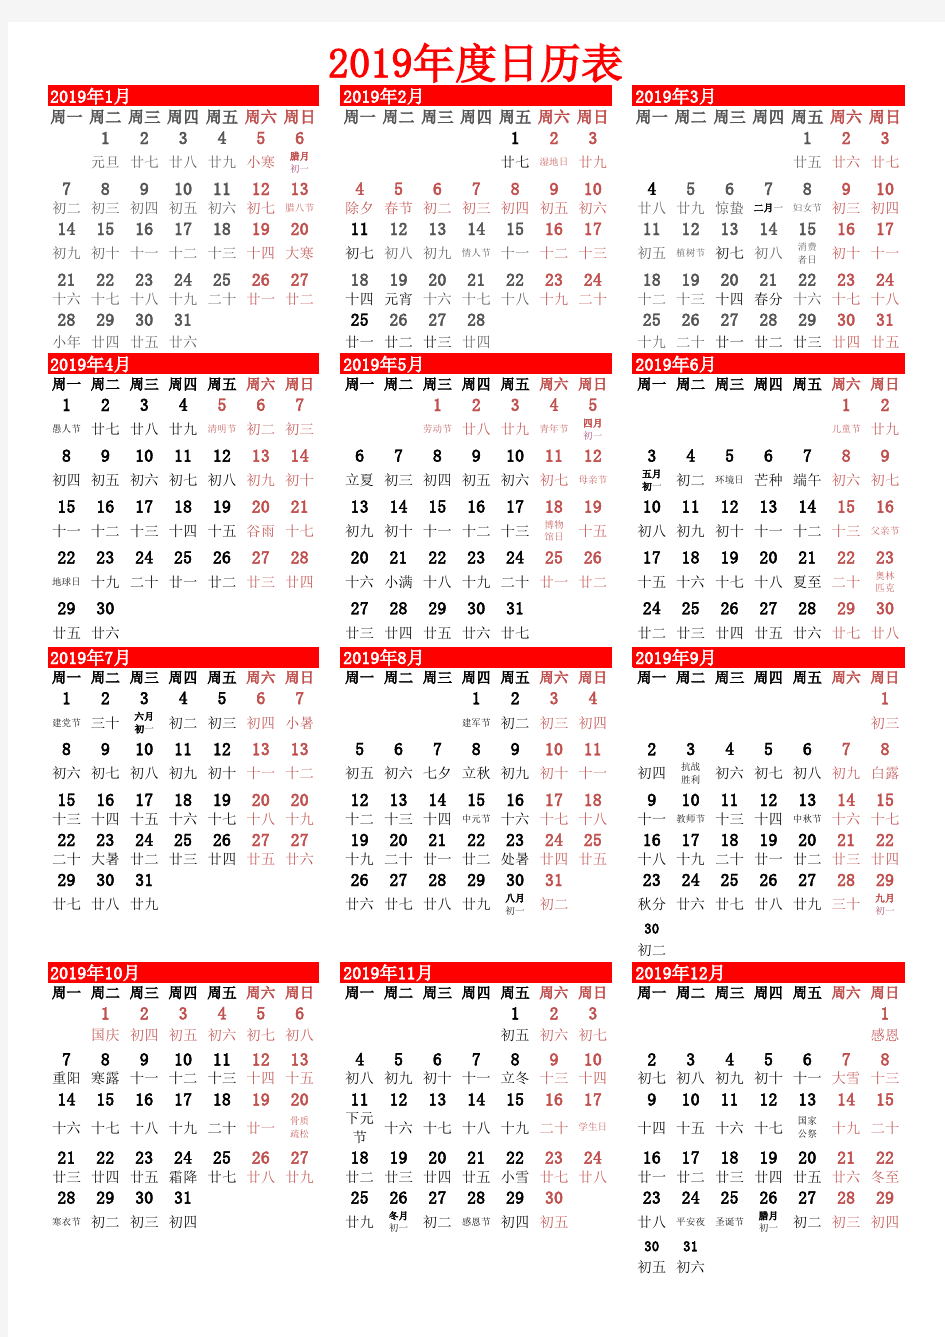 2019年度日历表(能A4纸单页打印)